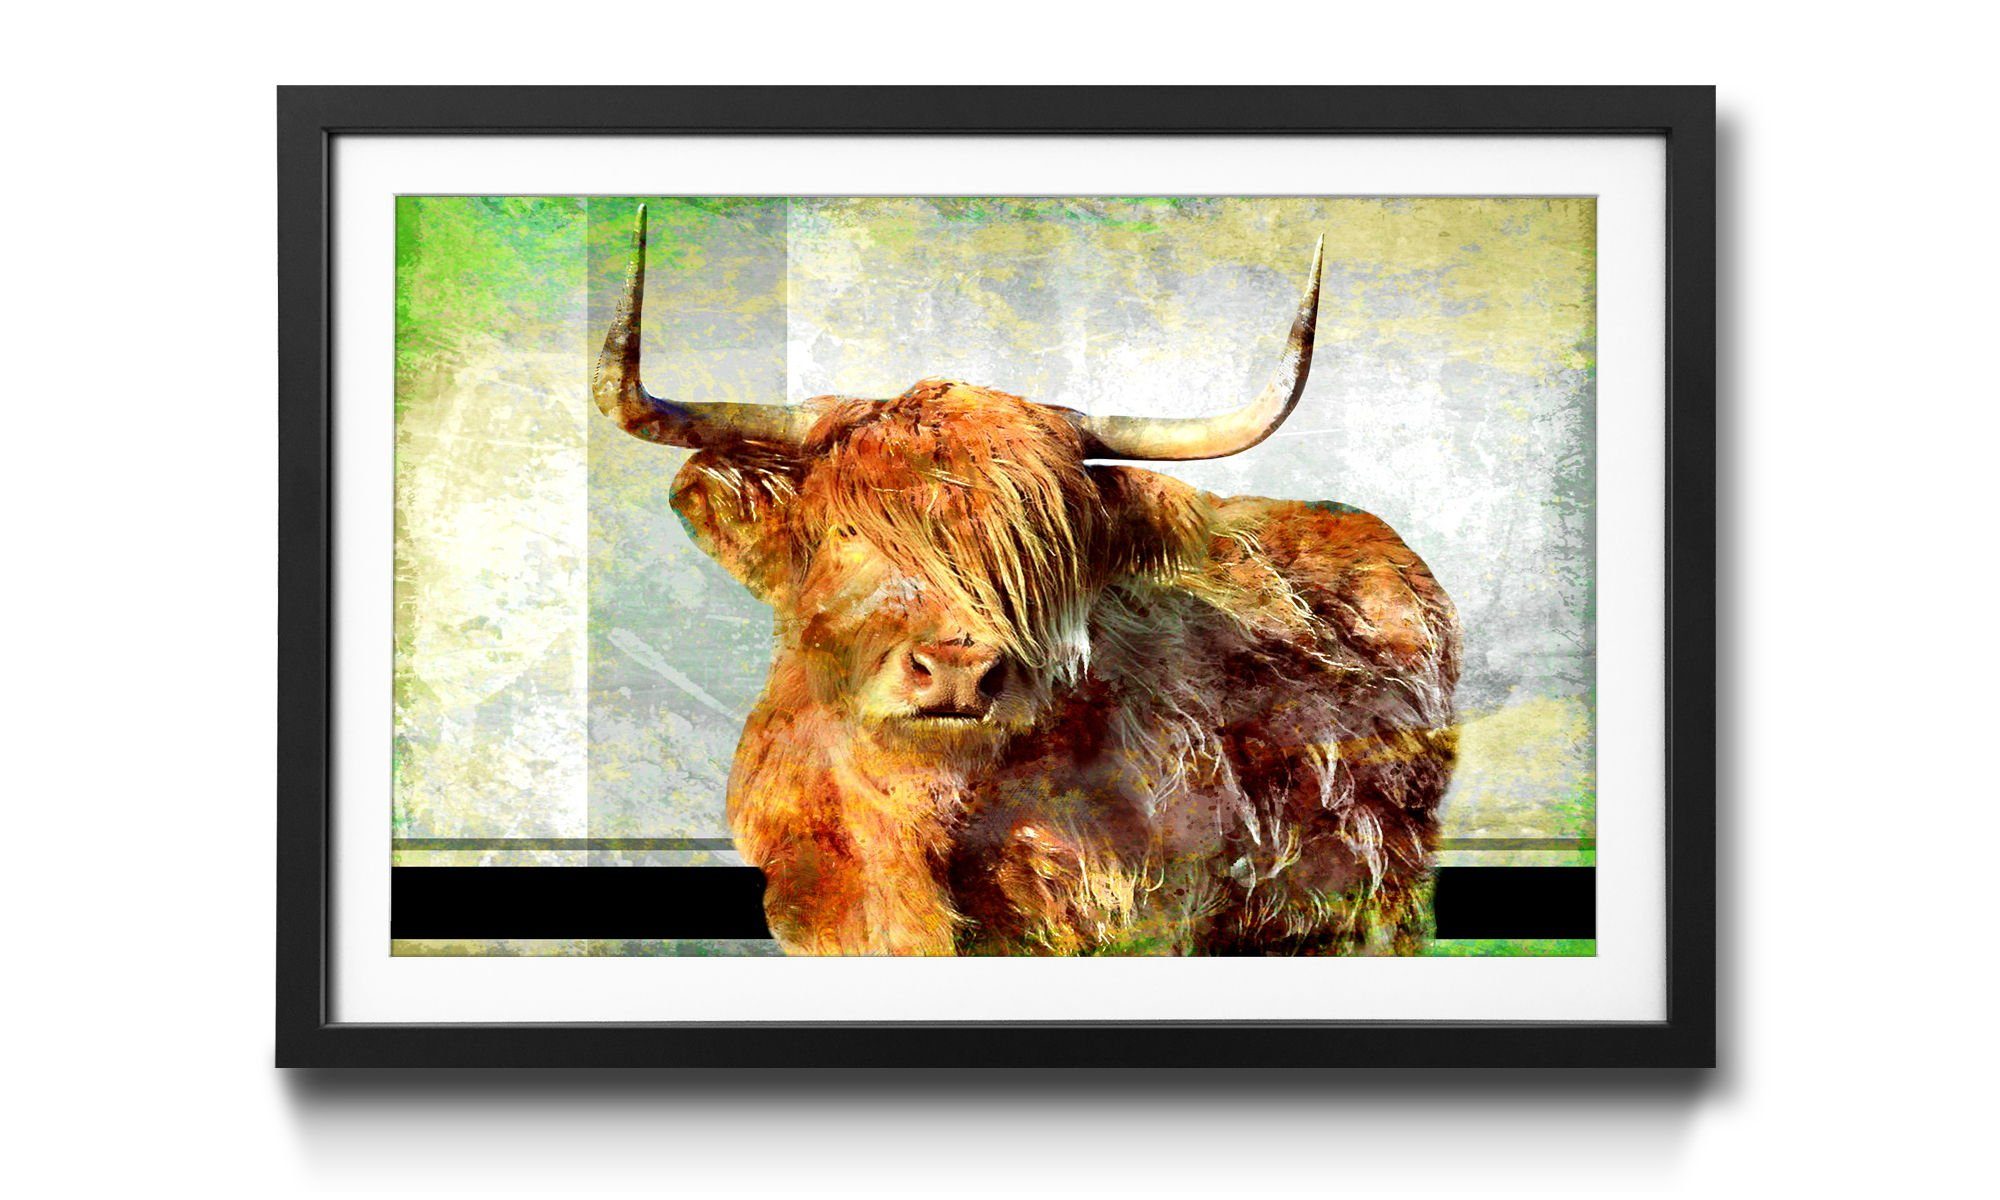 WandbilderXXL Kunstdruck El Toro, Stier, Wandbild, in 4 Größen erhältlich